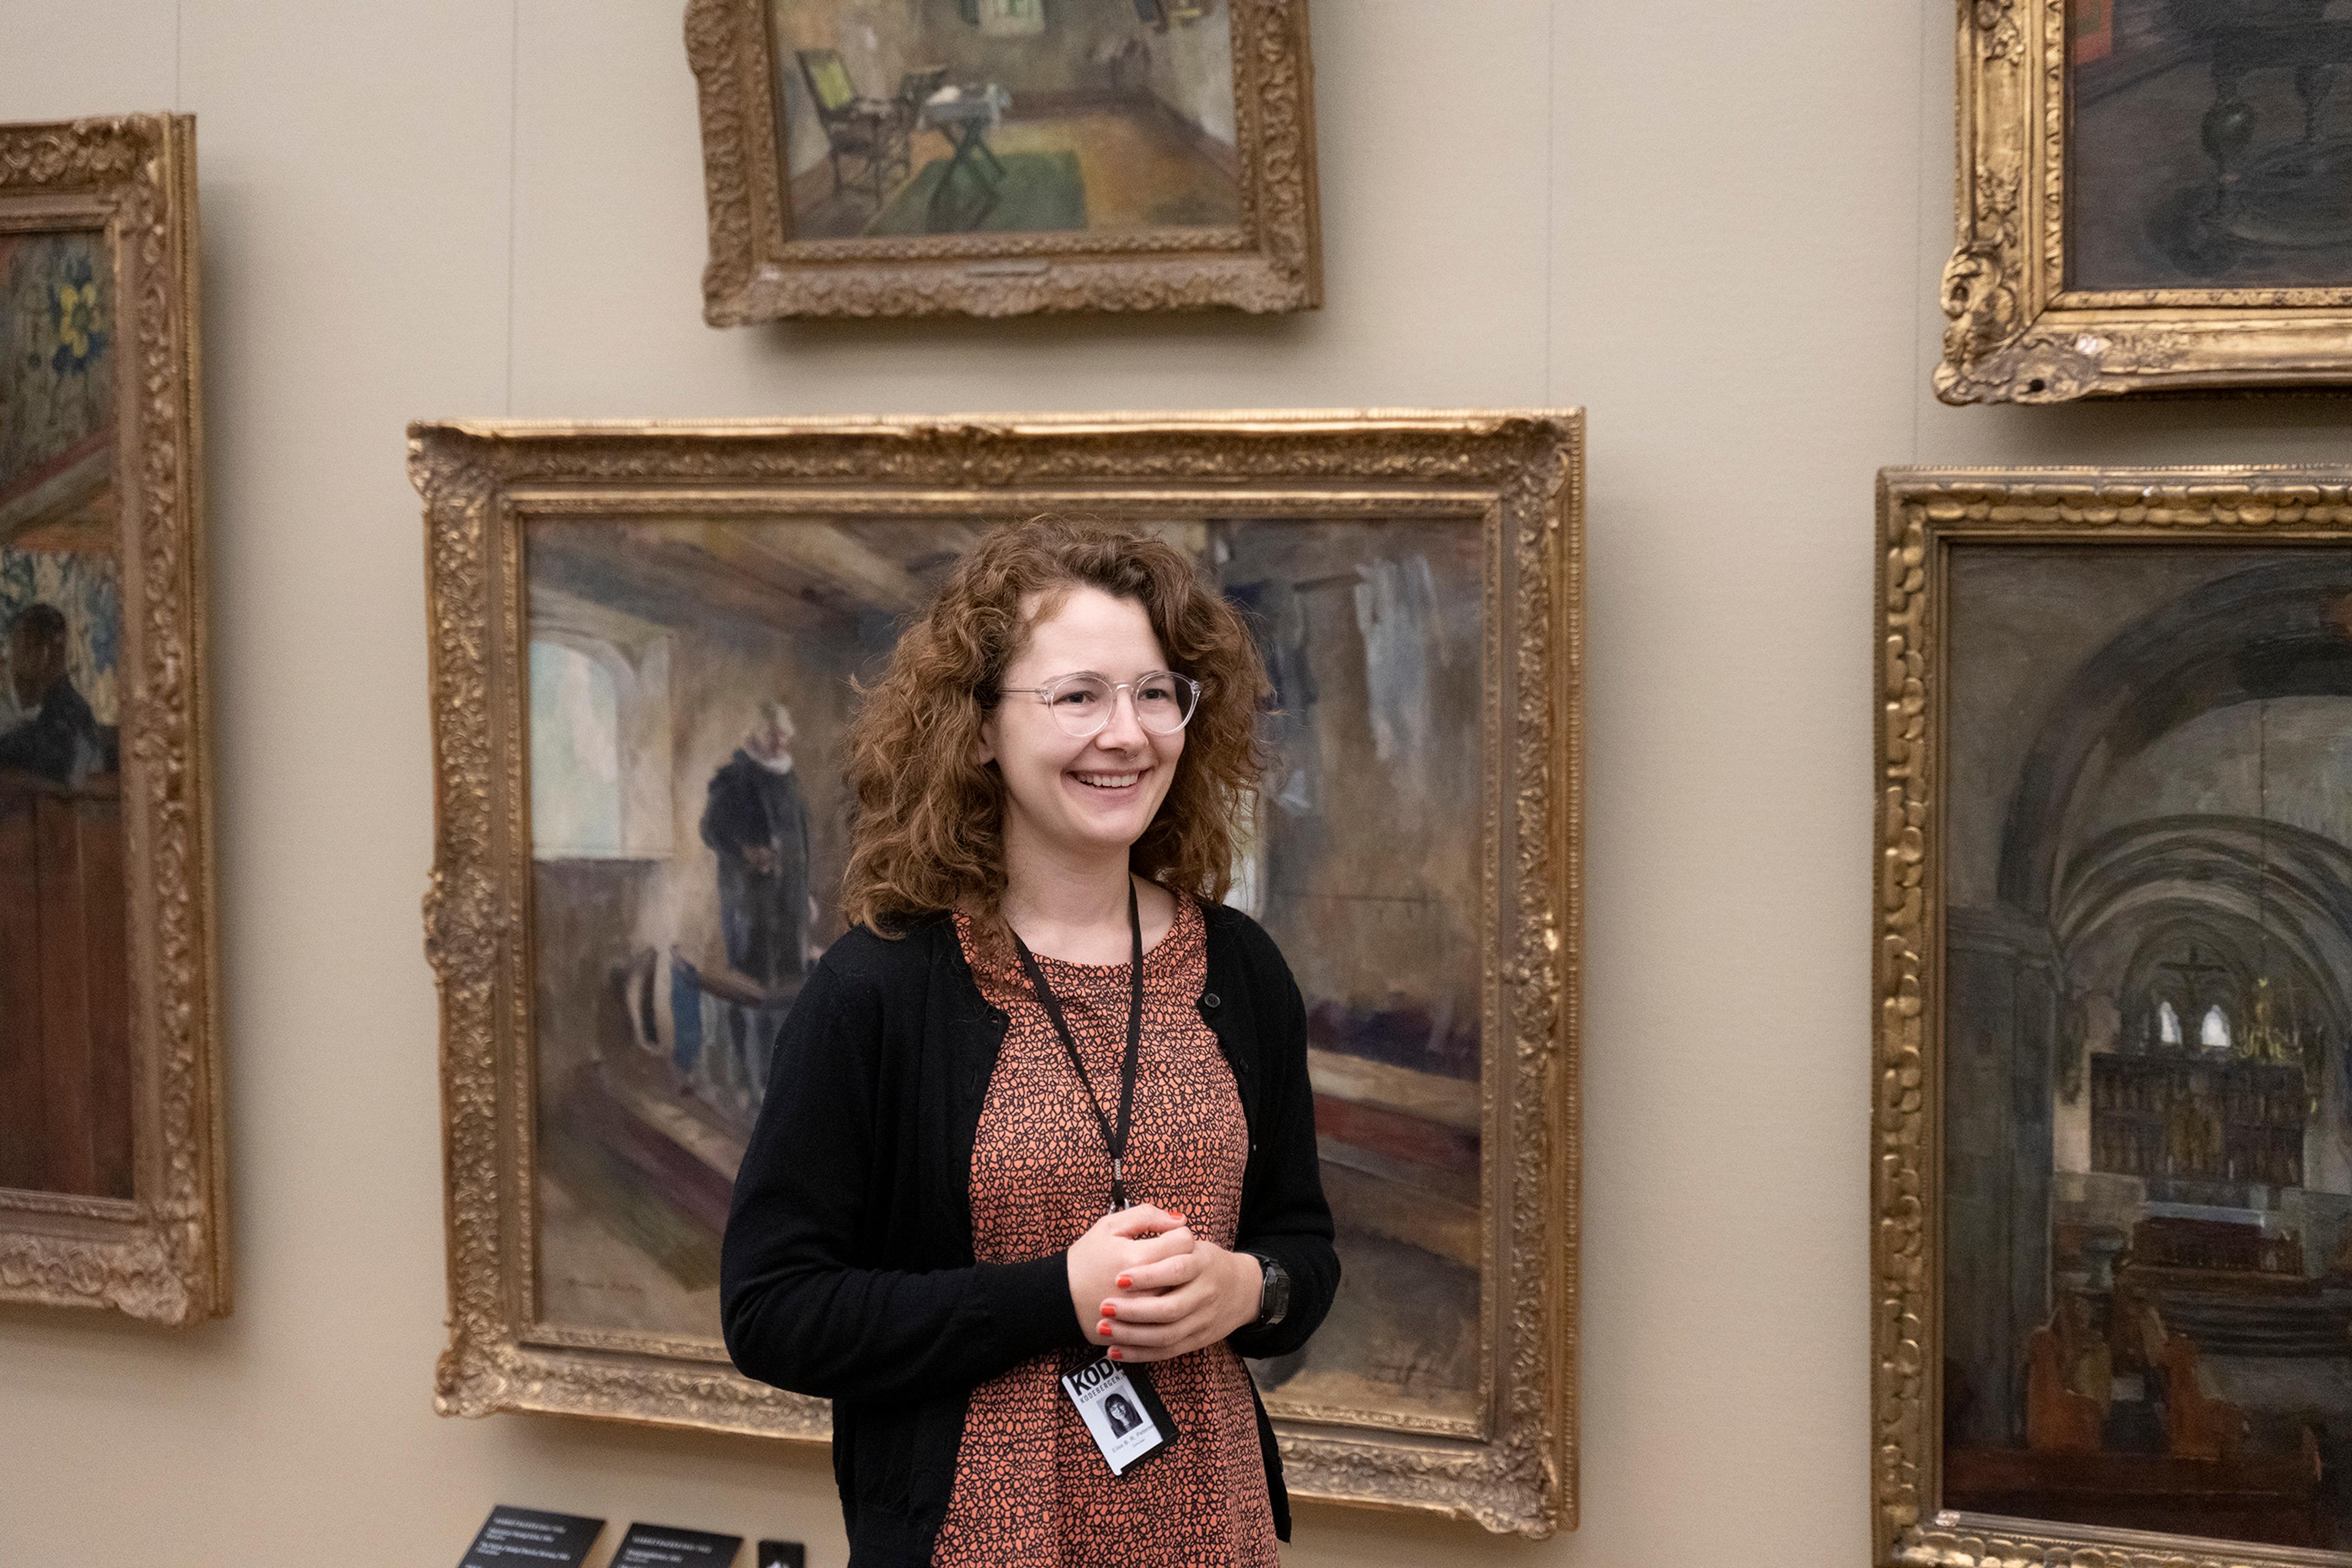 En omviser i Rasmus Meyer, som står foran malerier av Harriet Backer. Hun smiler.